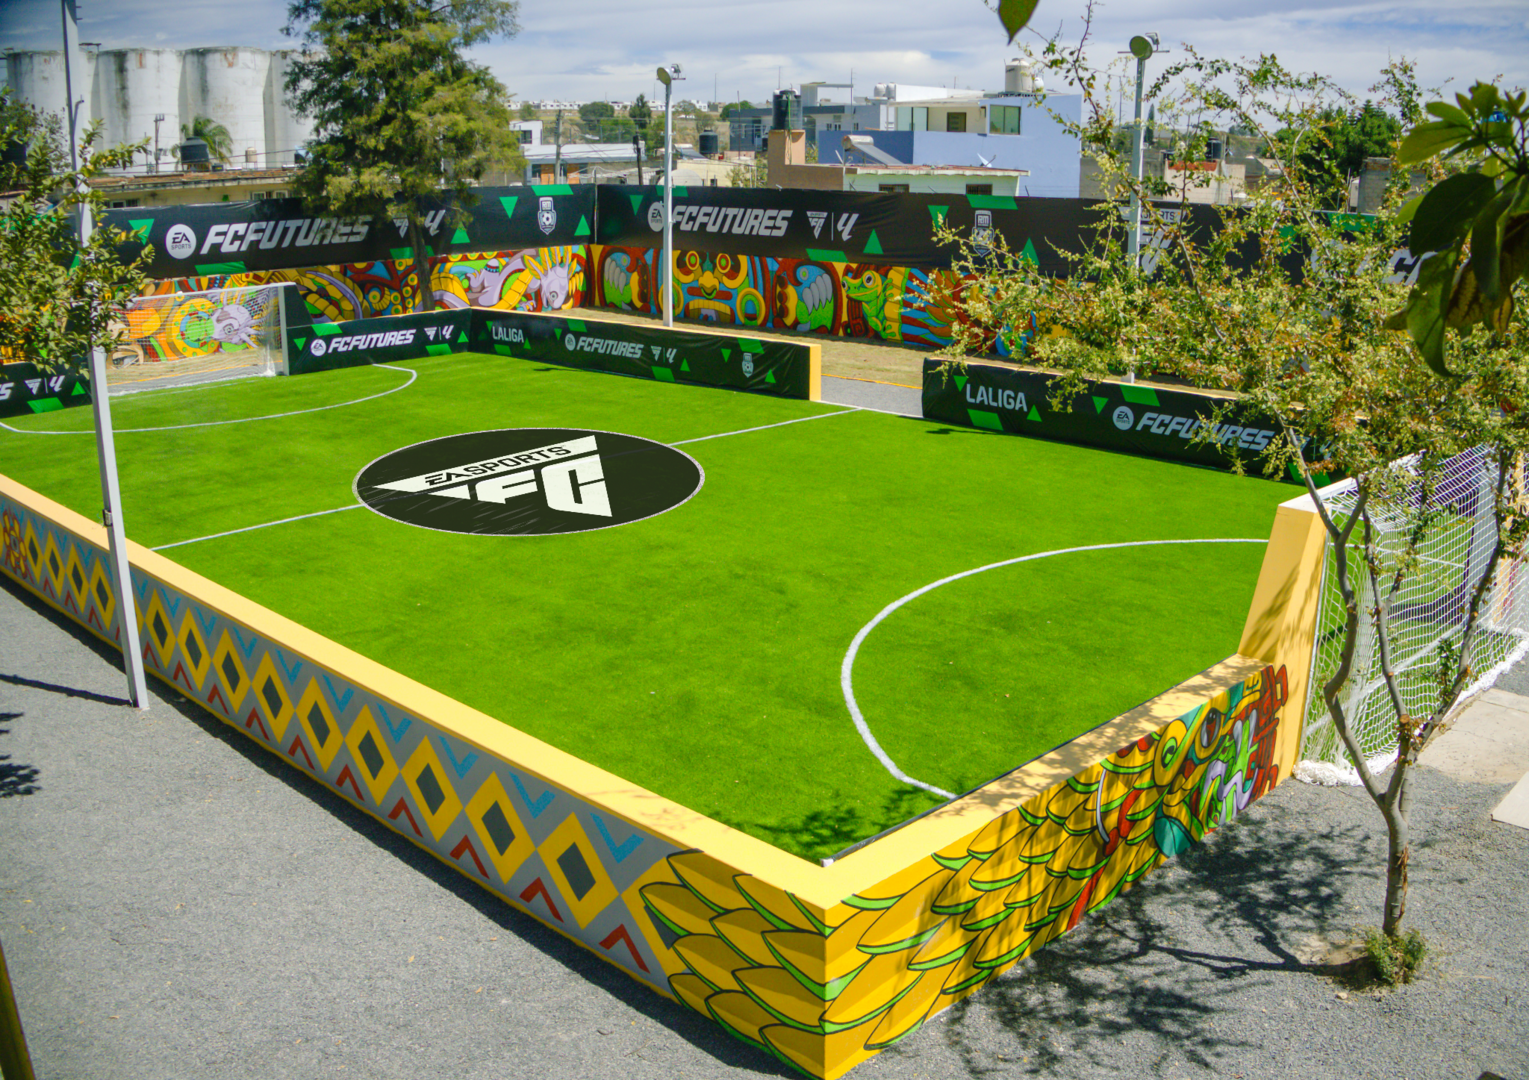 “EA SPORTS™ y LALIGA unen fuerzas: Inauguración histórica de una cancha de fútbol en Zapopan, México”